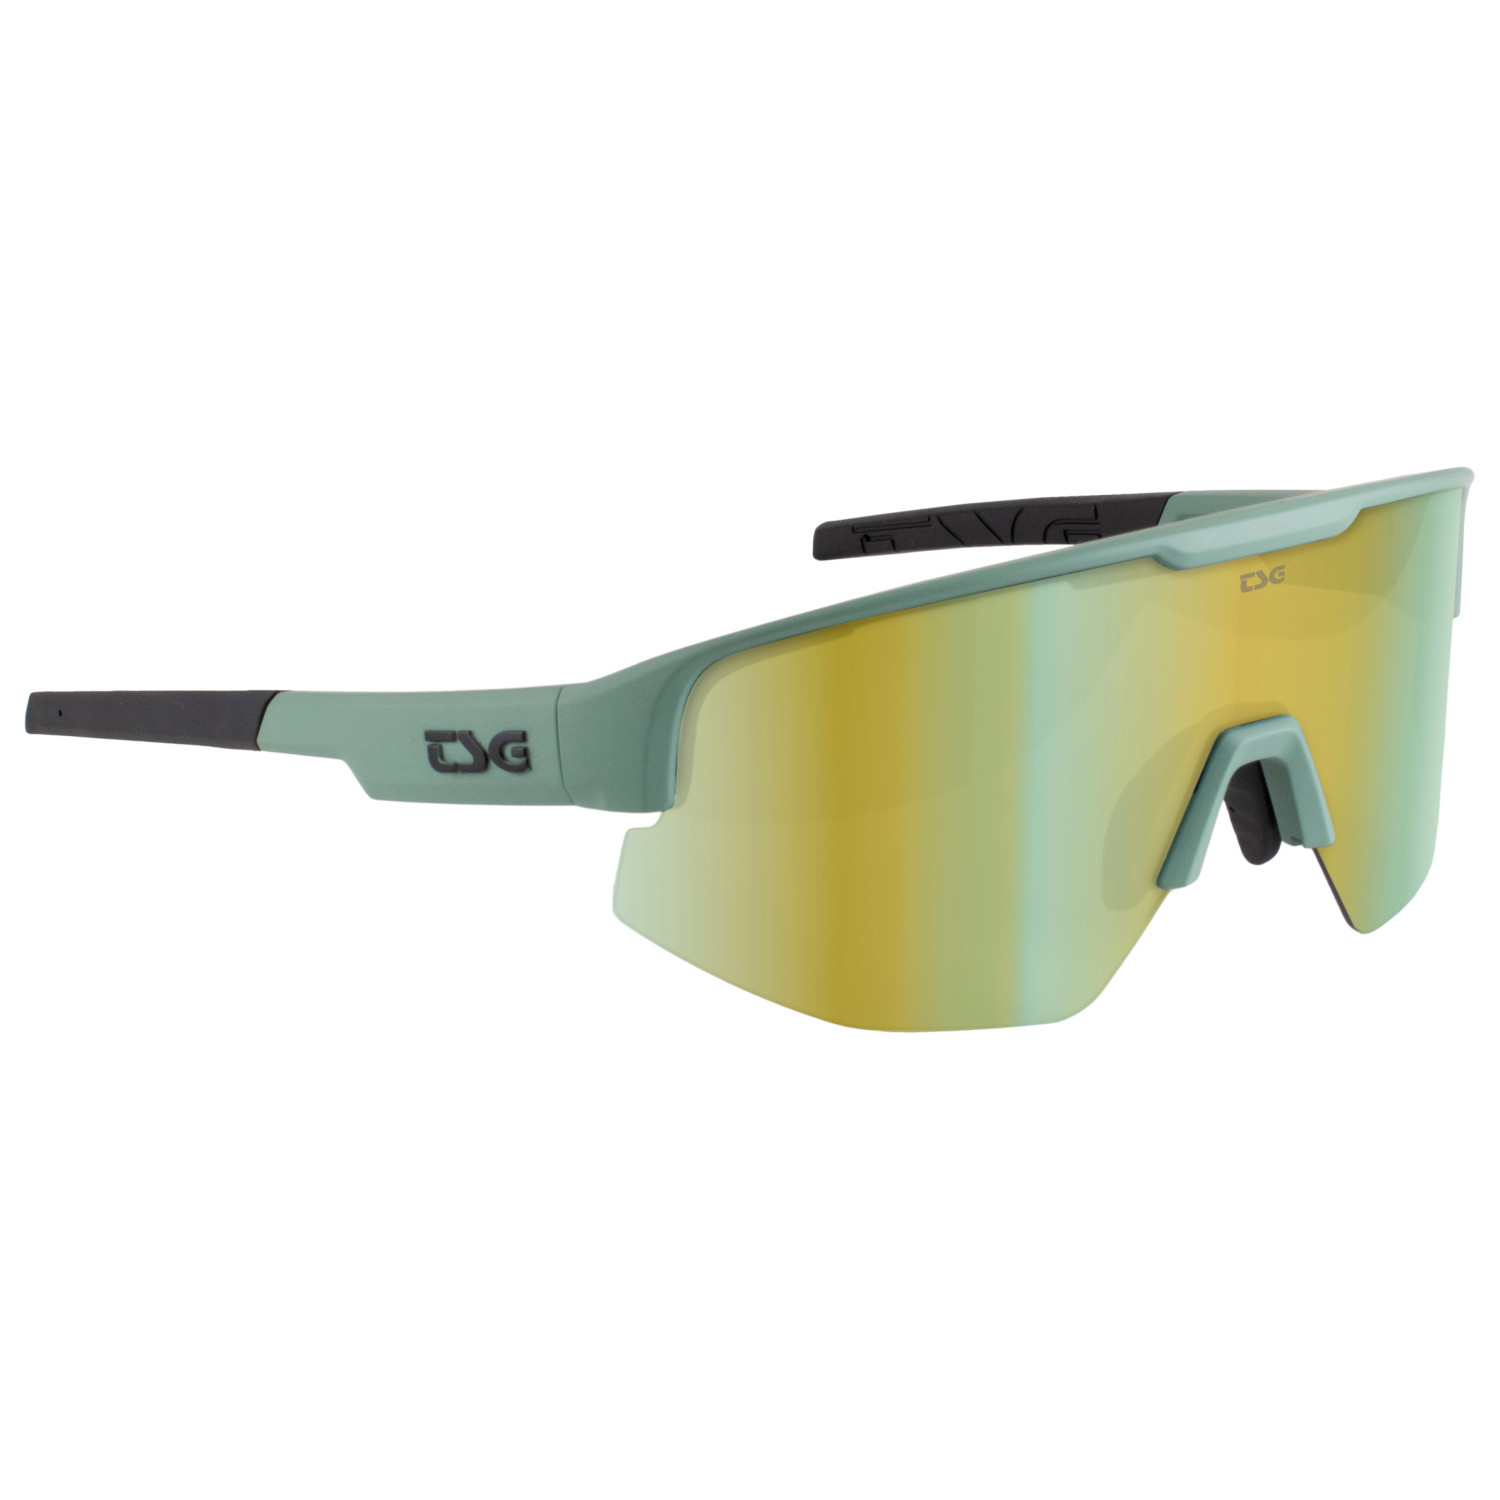 цена Велосипедные очки Tsg Loam Sunglasses, цвет Green/Grey